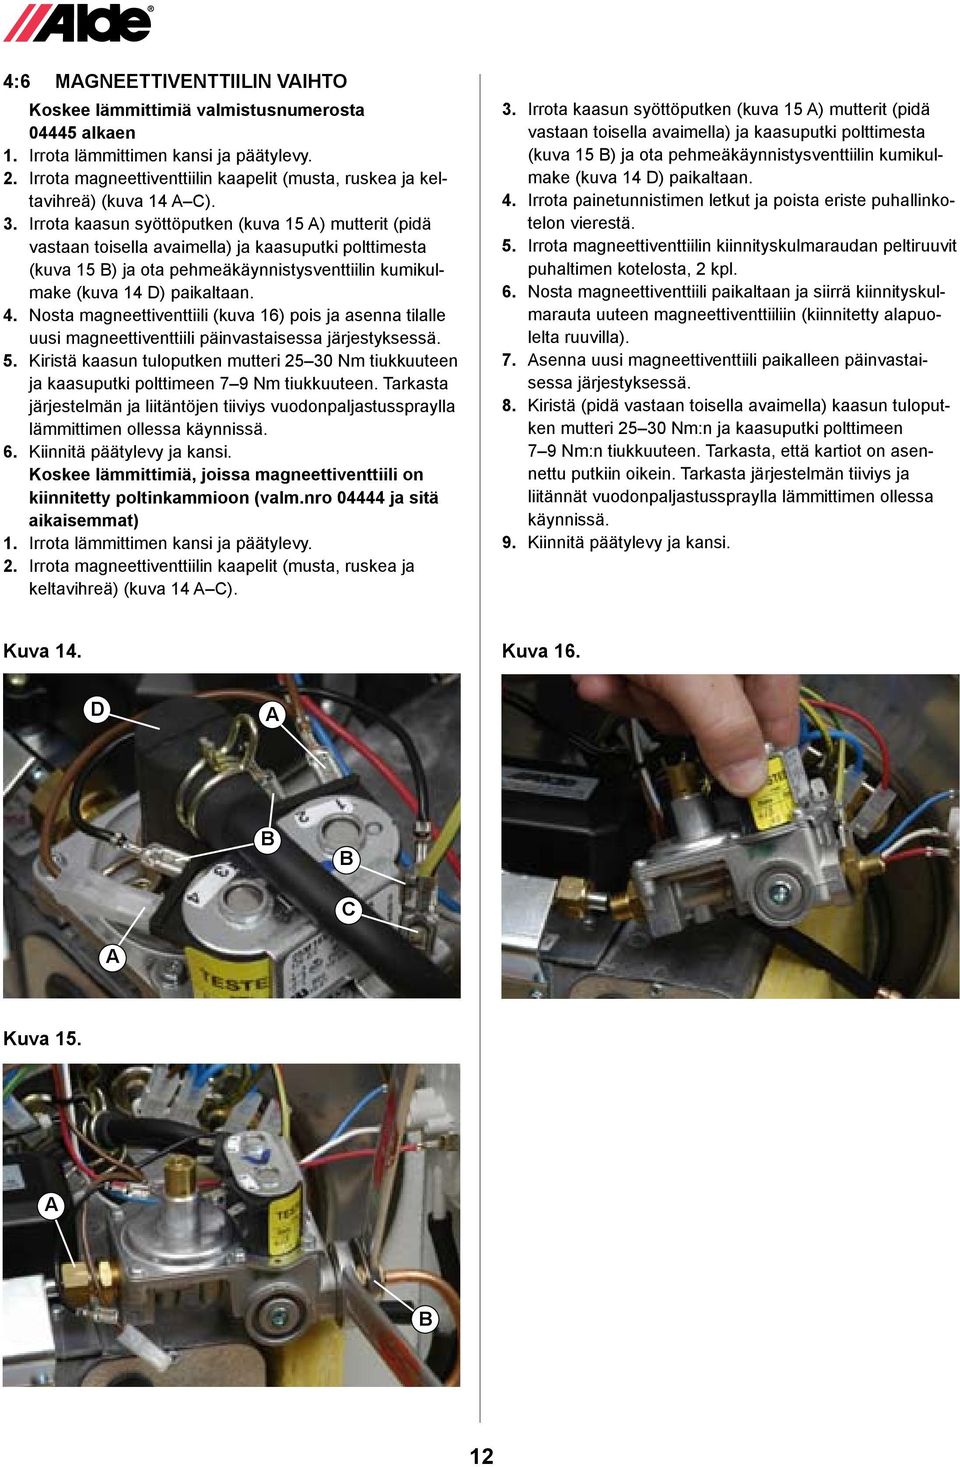 Irrota kaasun syöttöputken (kuva 15 ) mutterit (pidä vastaan toisella avaimella) ja kaasuputki polttimesta (kuva 15 ) ja ota pehmeäkäynnistysventtiilin kumikulmake (kuva 14 D) paikaltaan. 4.